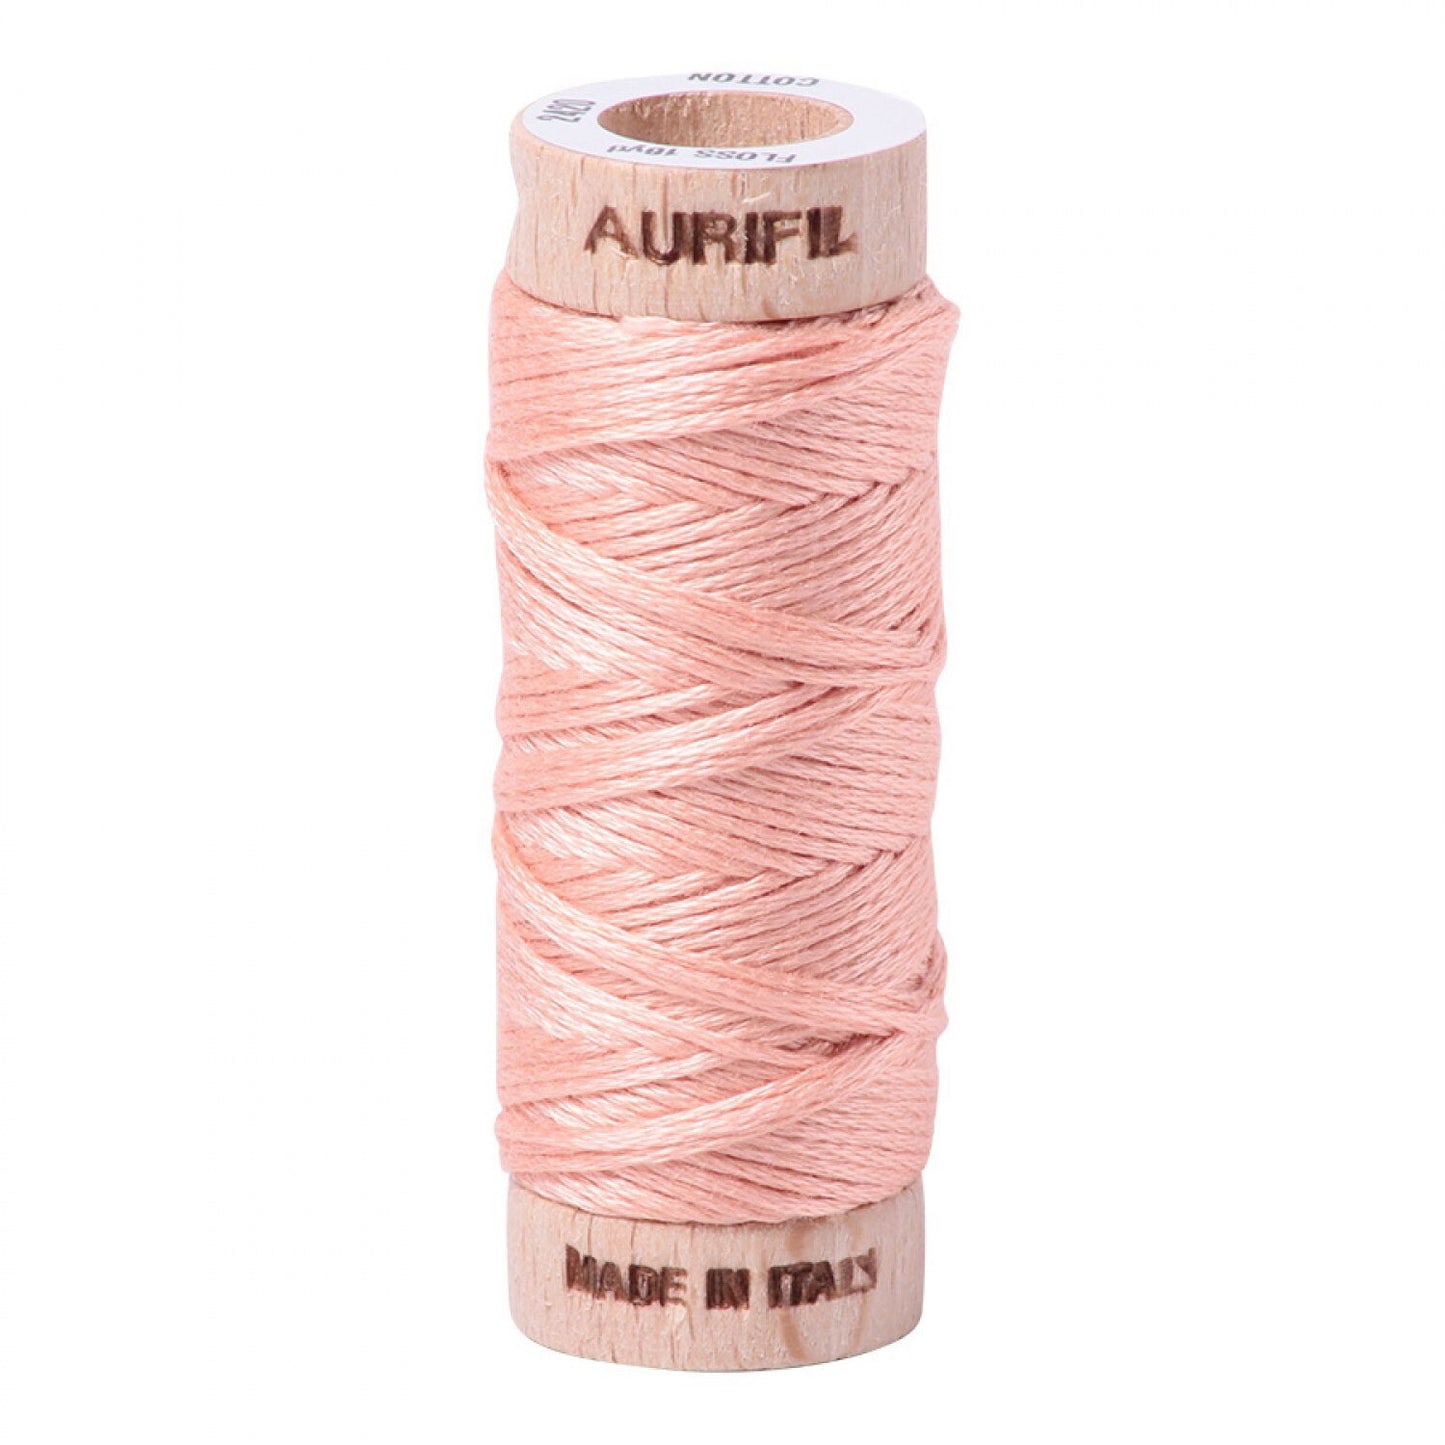 Fleshy Pink Aurifil Floss - 2420 - Aurifloss